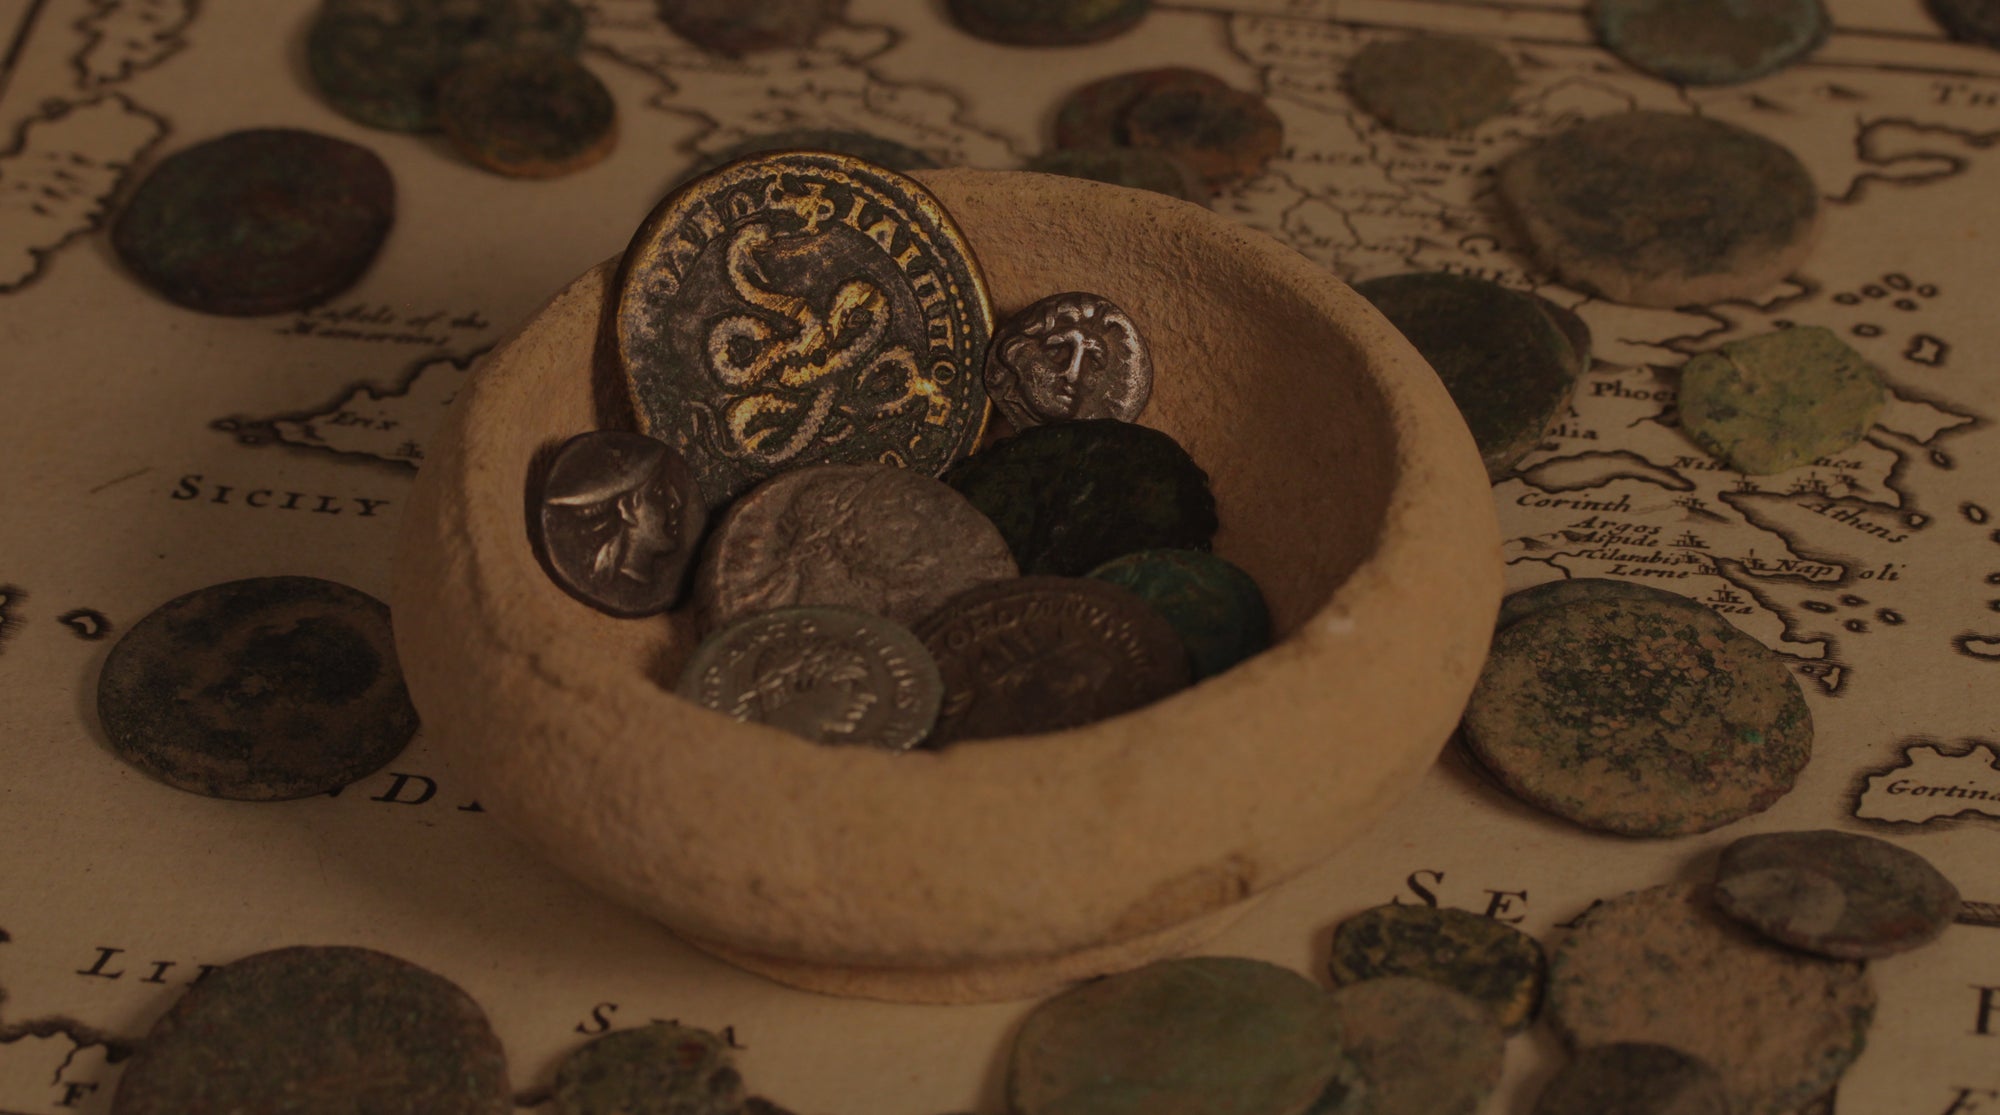 April 3rd: Greek & Roman Coins III